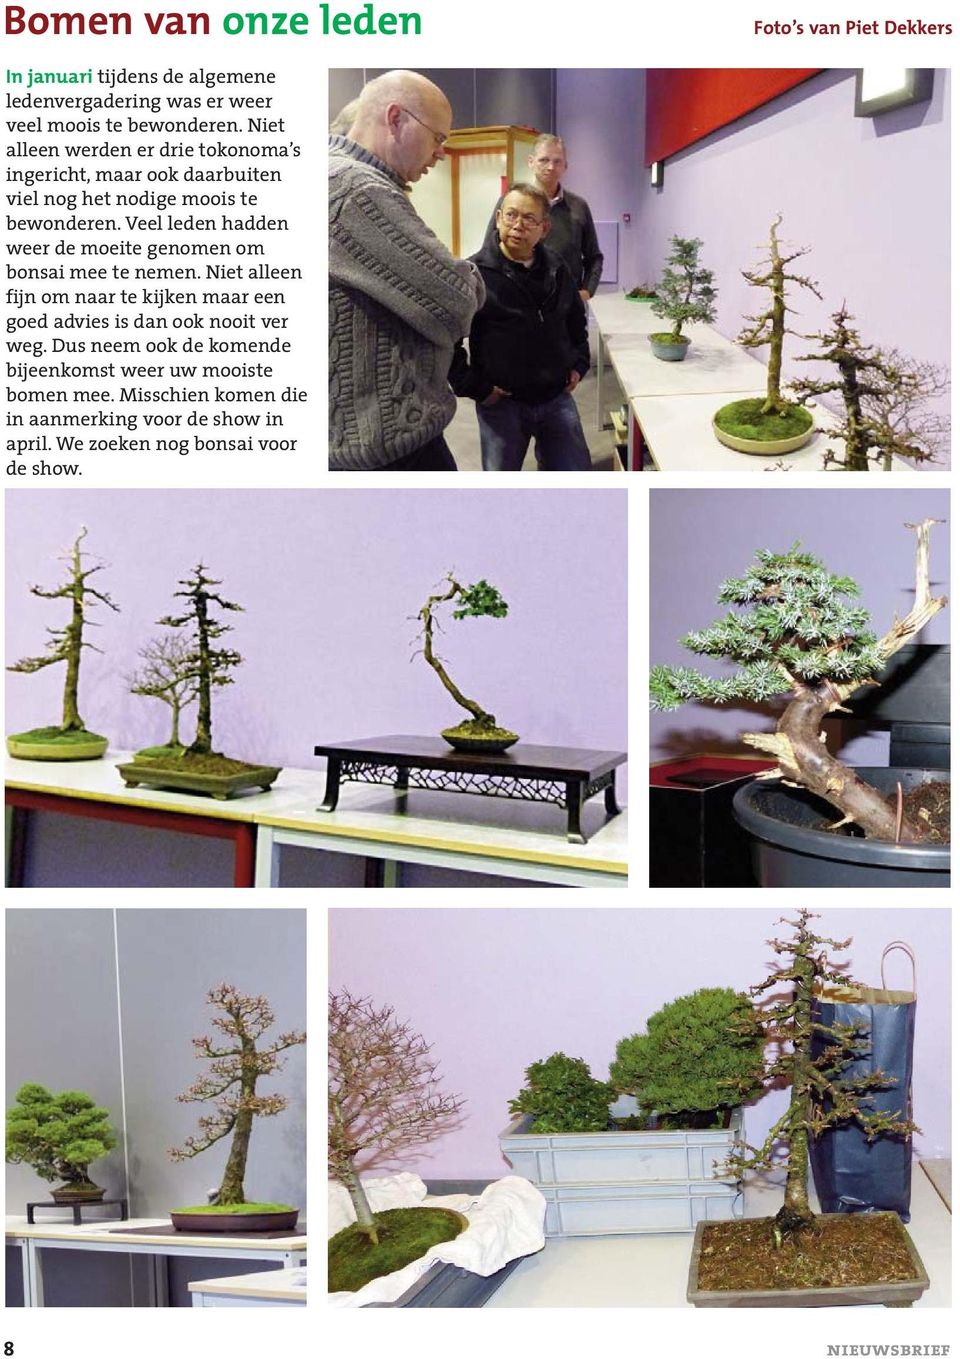 Veel leden hadden weer de moeite genomen om bonsai mee te nemen.